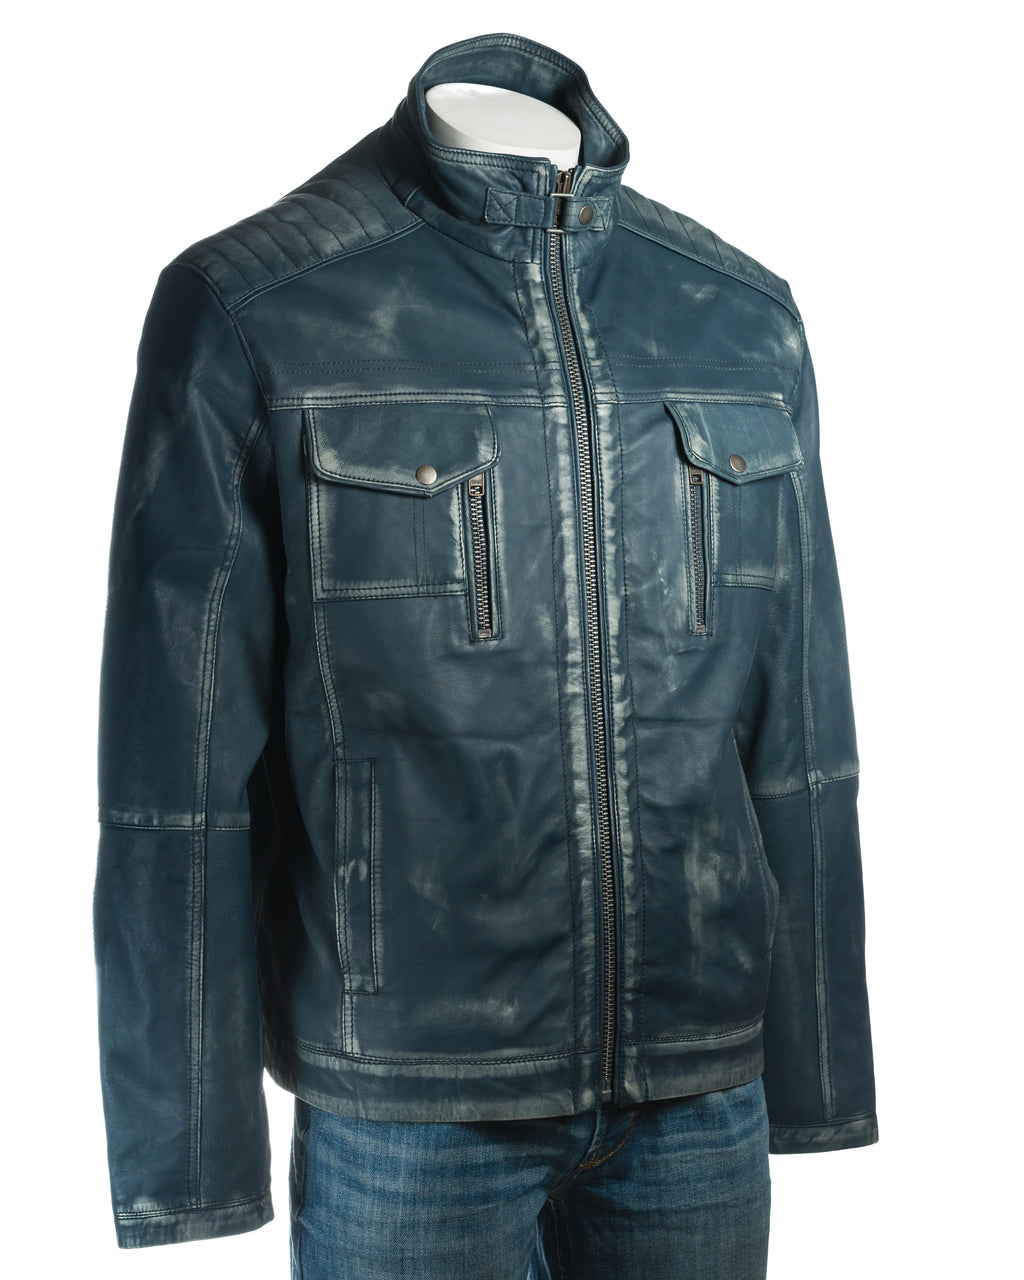 Men's Plus Size Antique Blue Vintage Biker Style Leather Jacket - Dominico